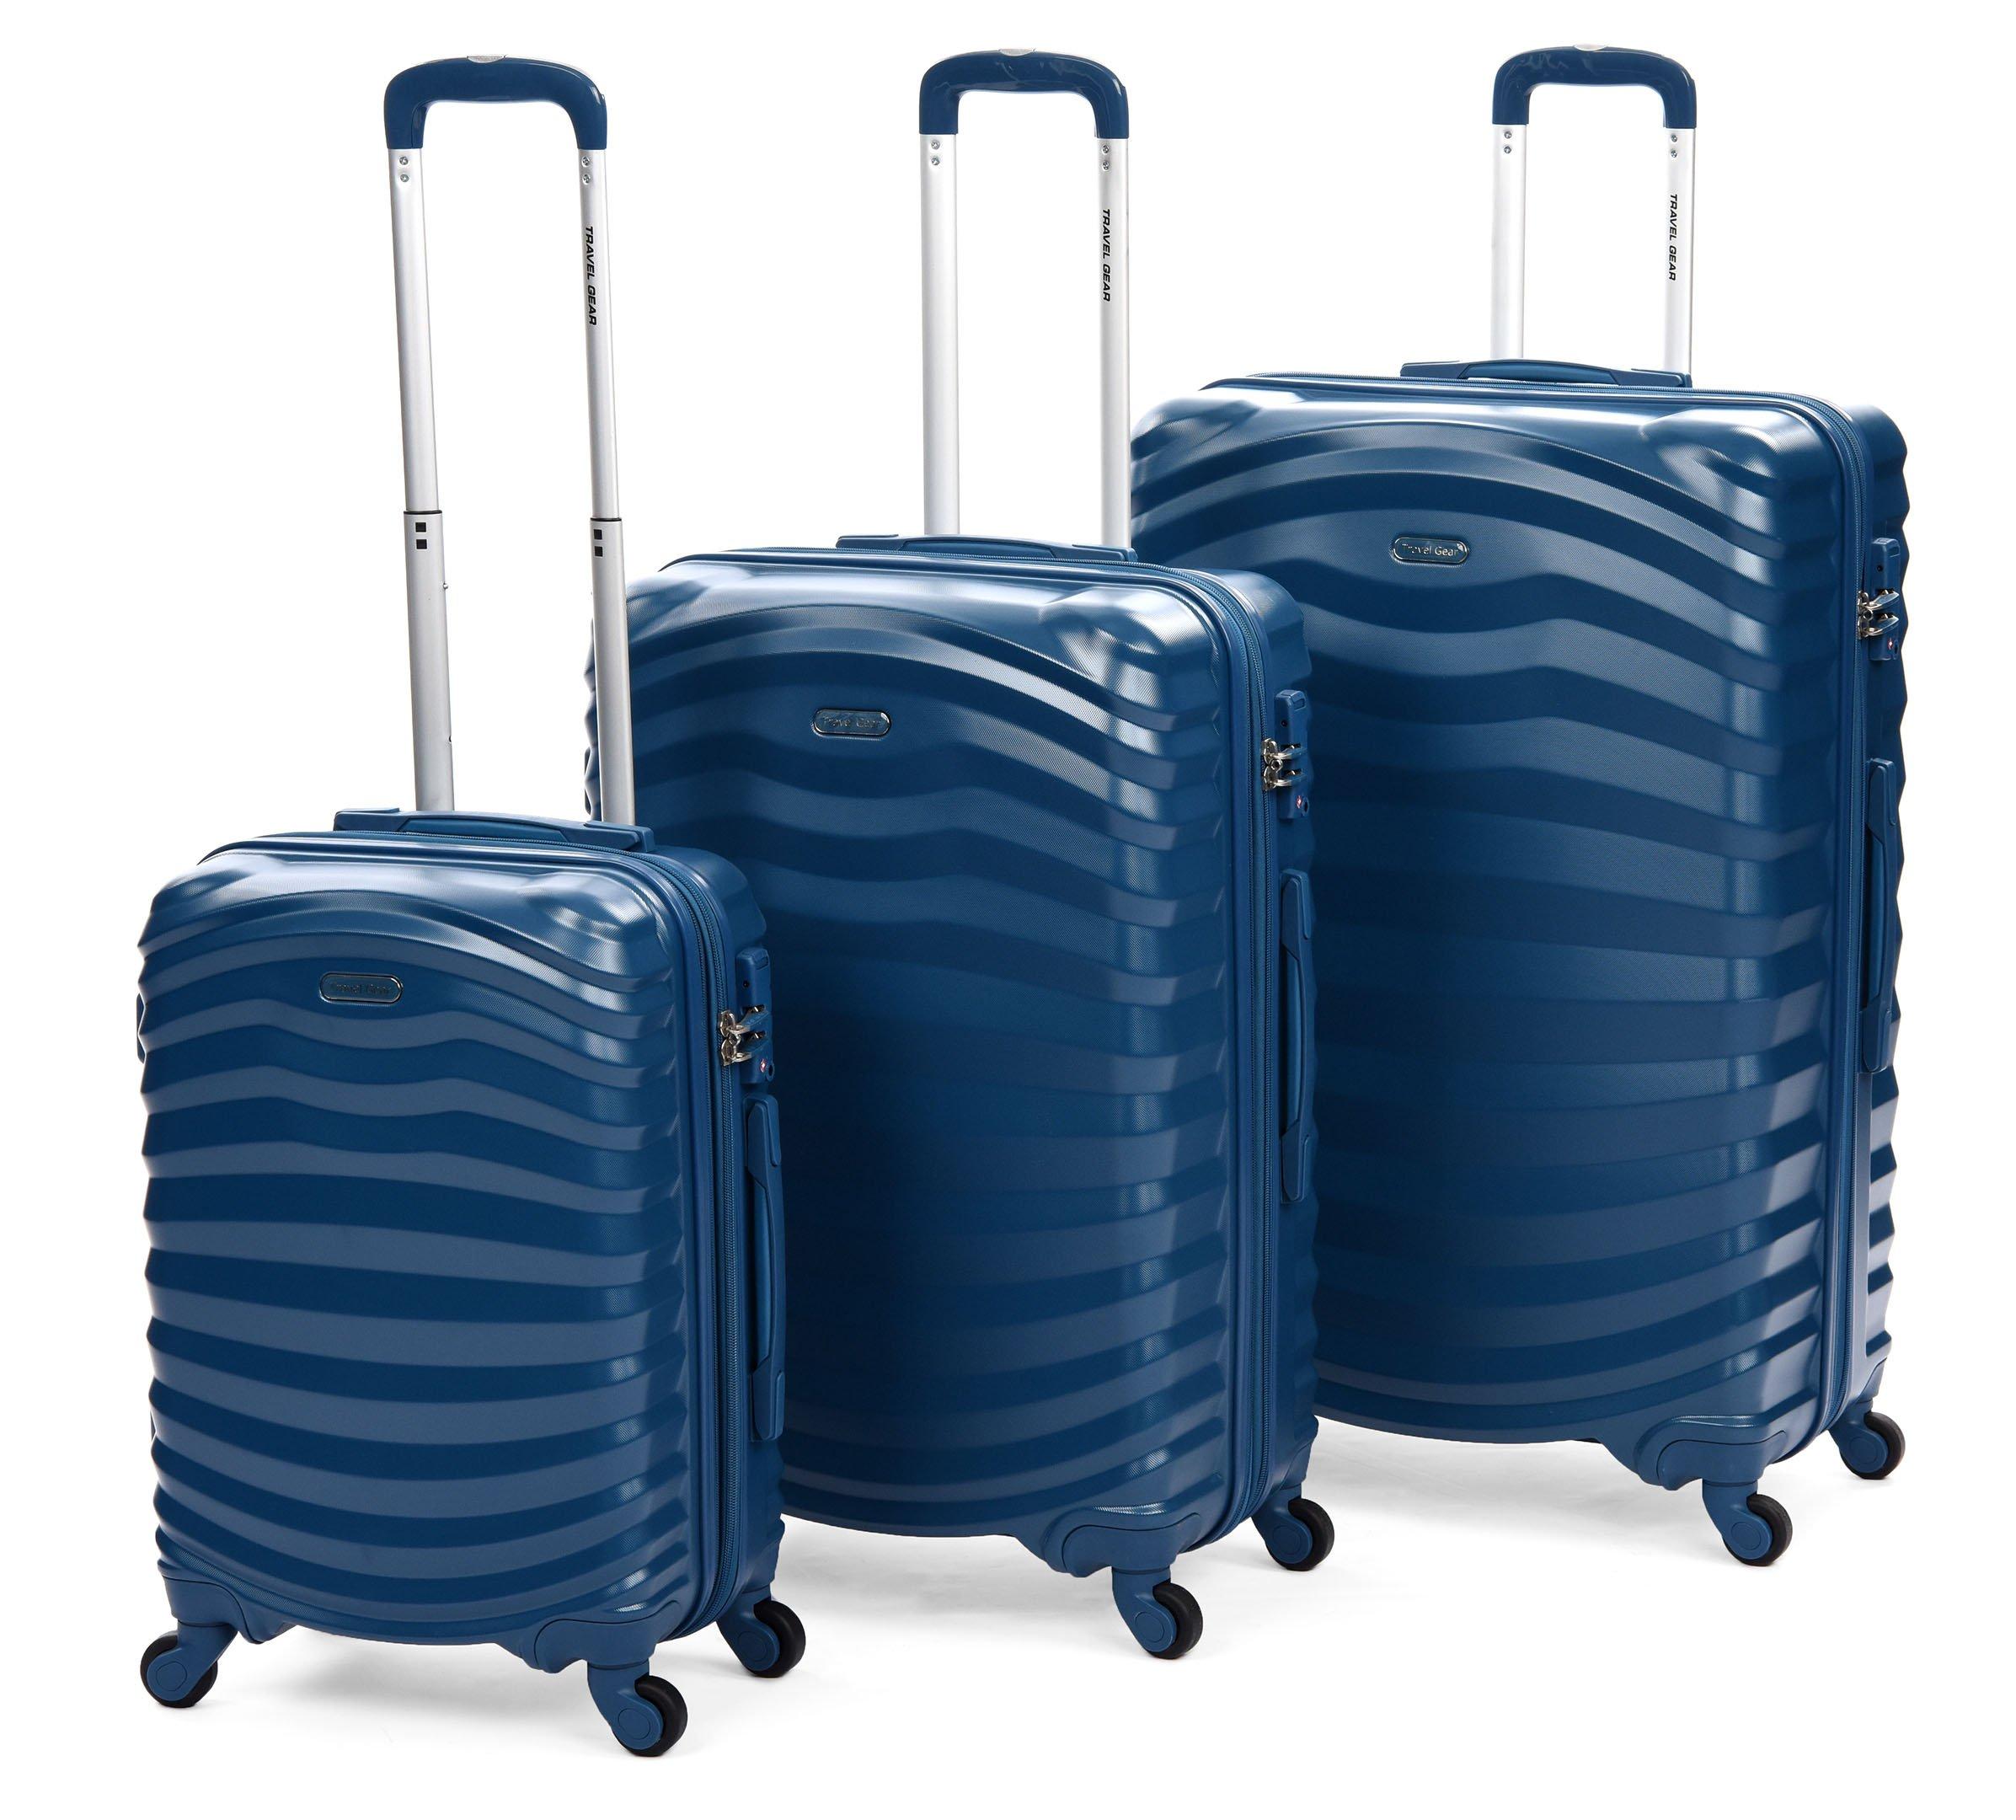 luggage travel gear